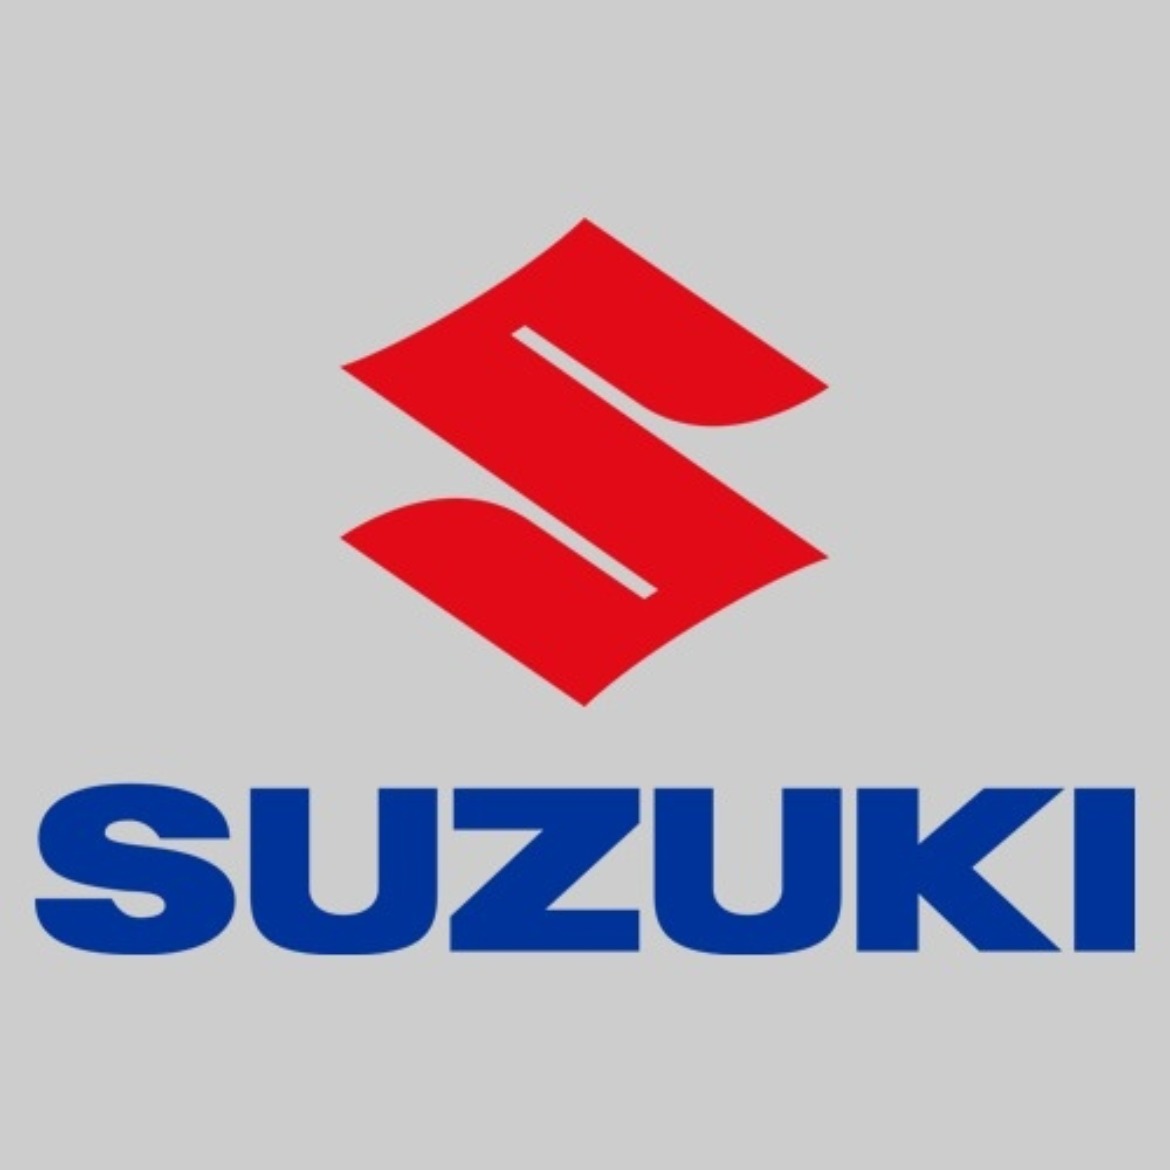 New Suzuki Range at Drayton Motors Suzuki